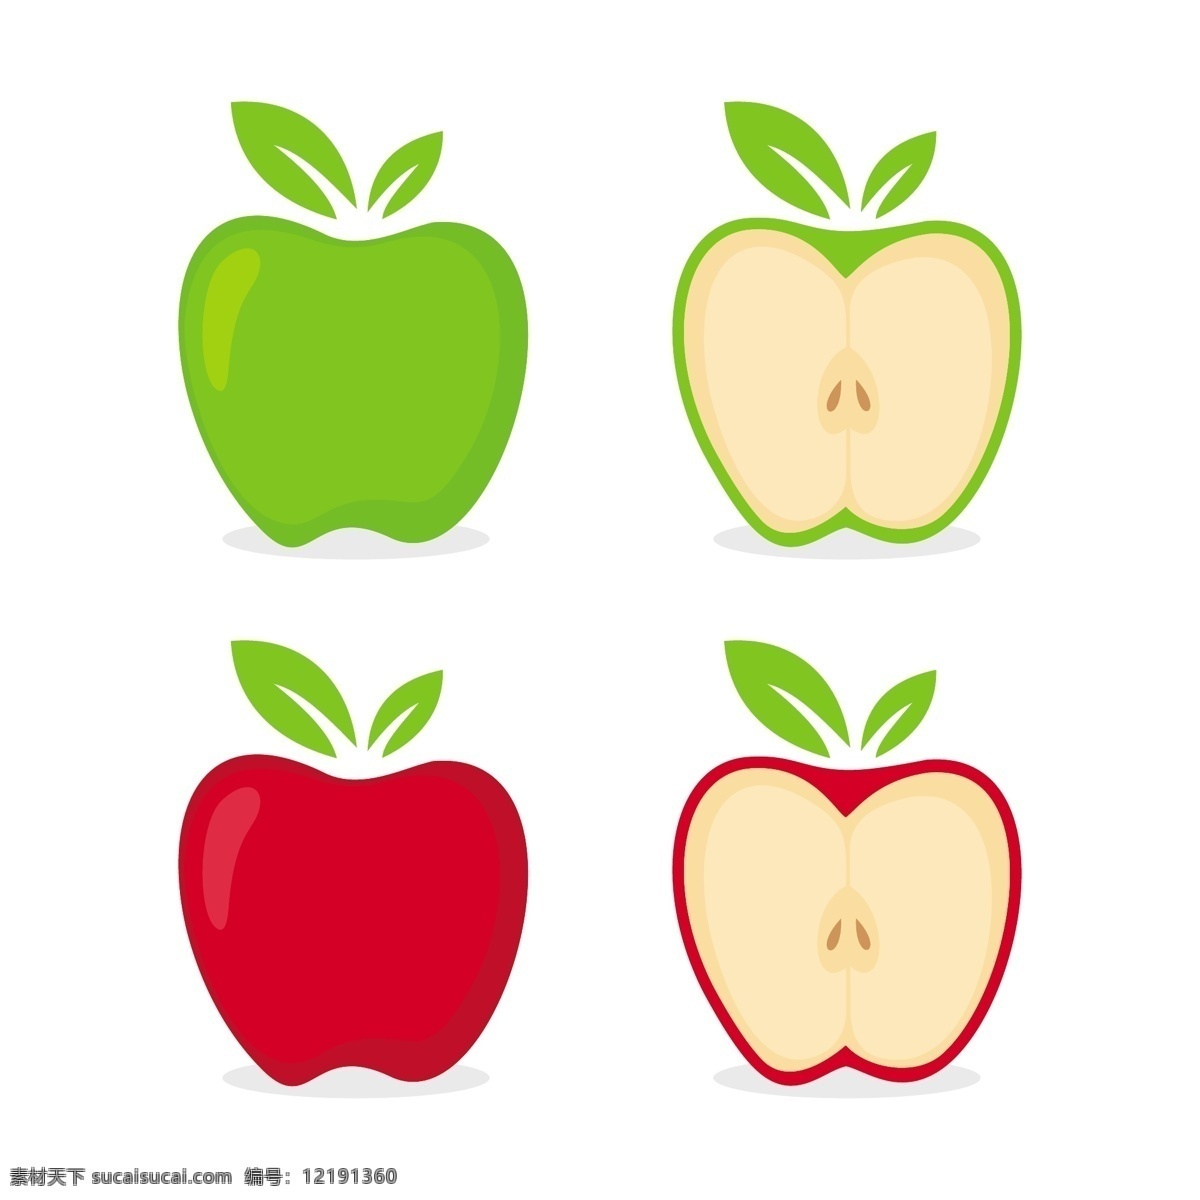 苹果 矢量图 苹果矢量 苹果背景 苹果矢量背景 苹果插图 苹果矢量元素 苹果矢量素材 苹果矢量设计 矢量苹果